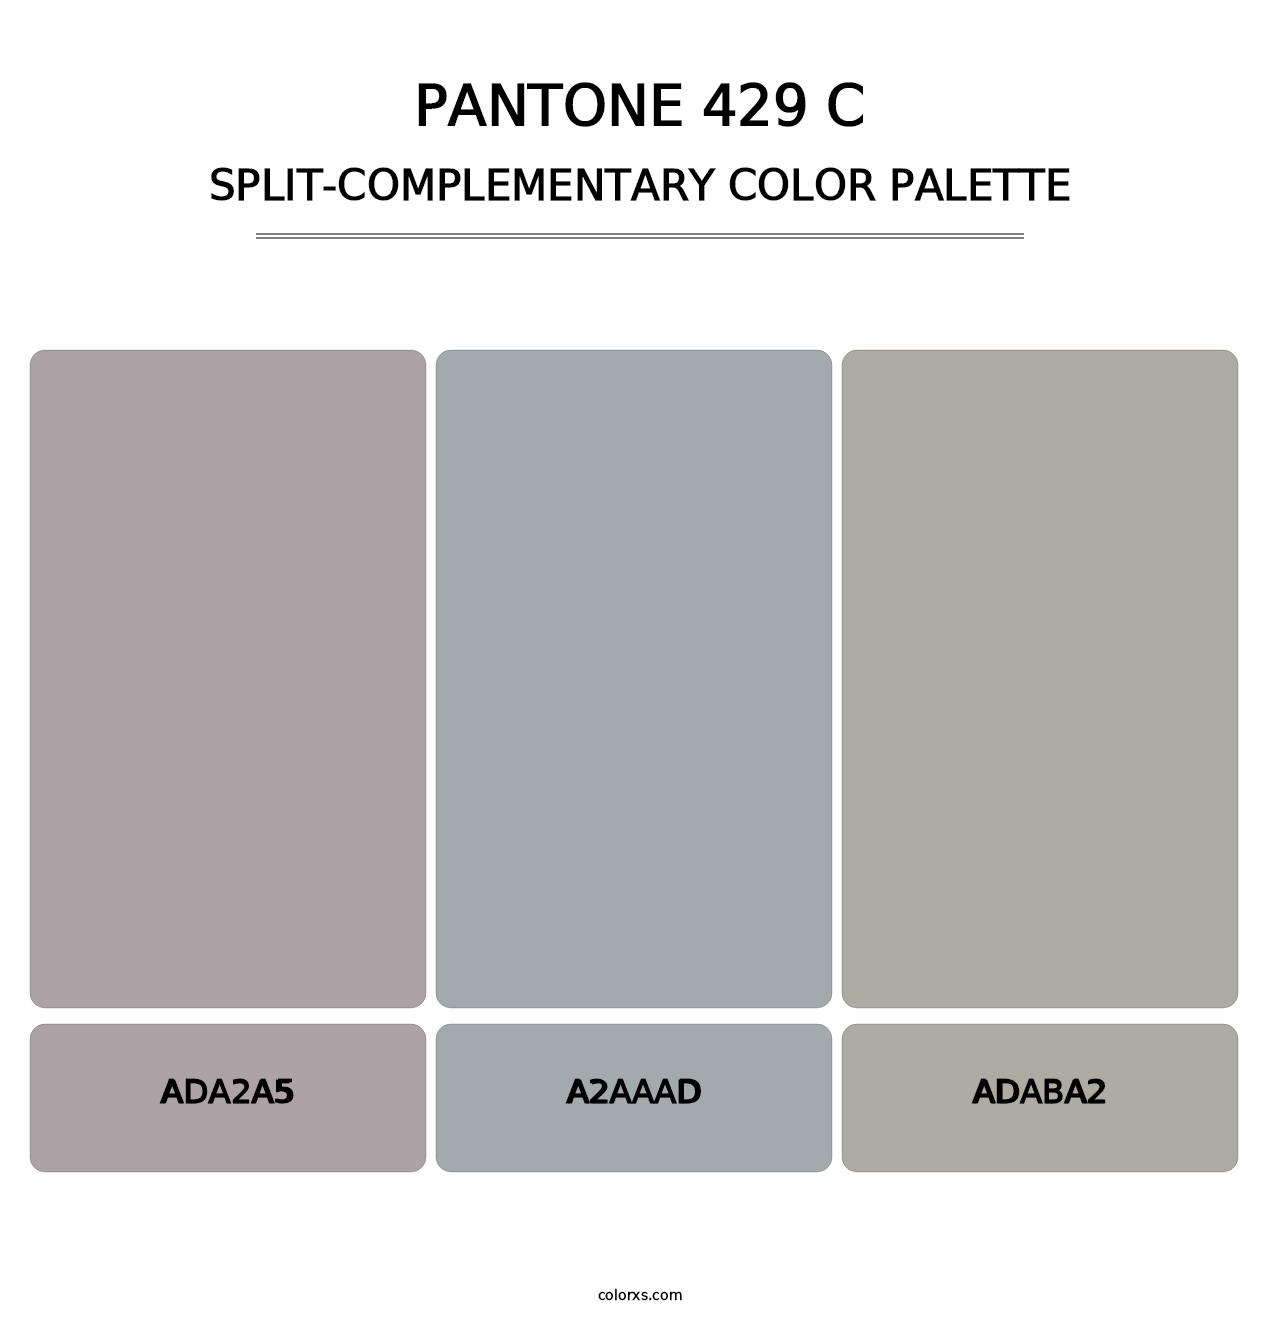 PANTONE 429 C - Split-Complementary Color Palette